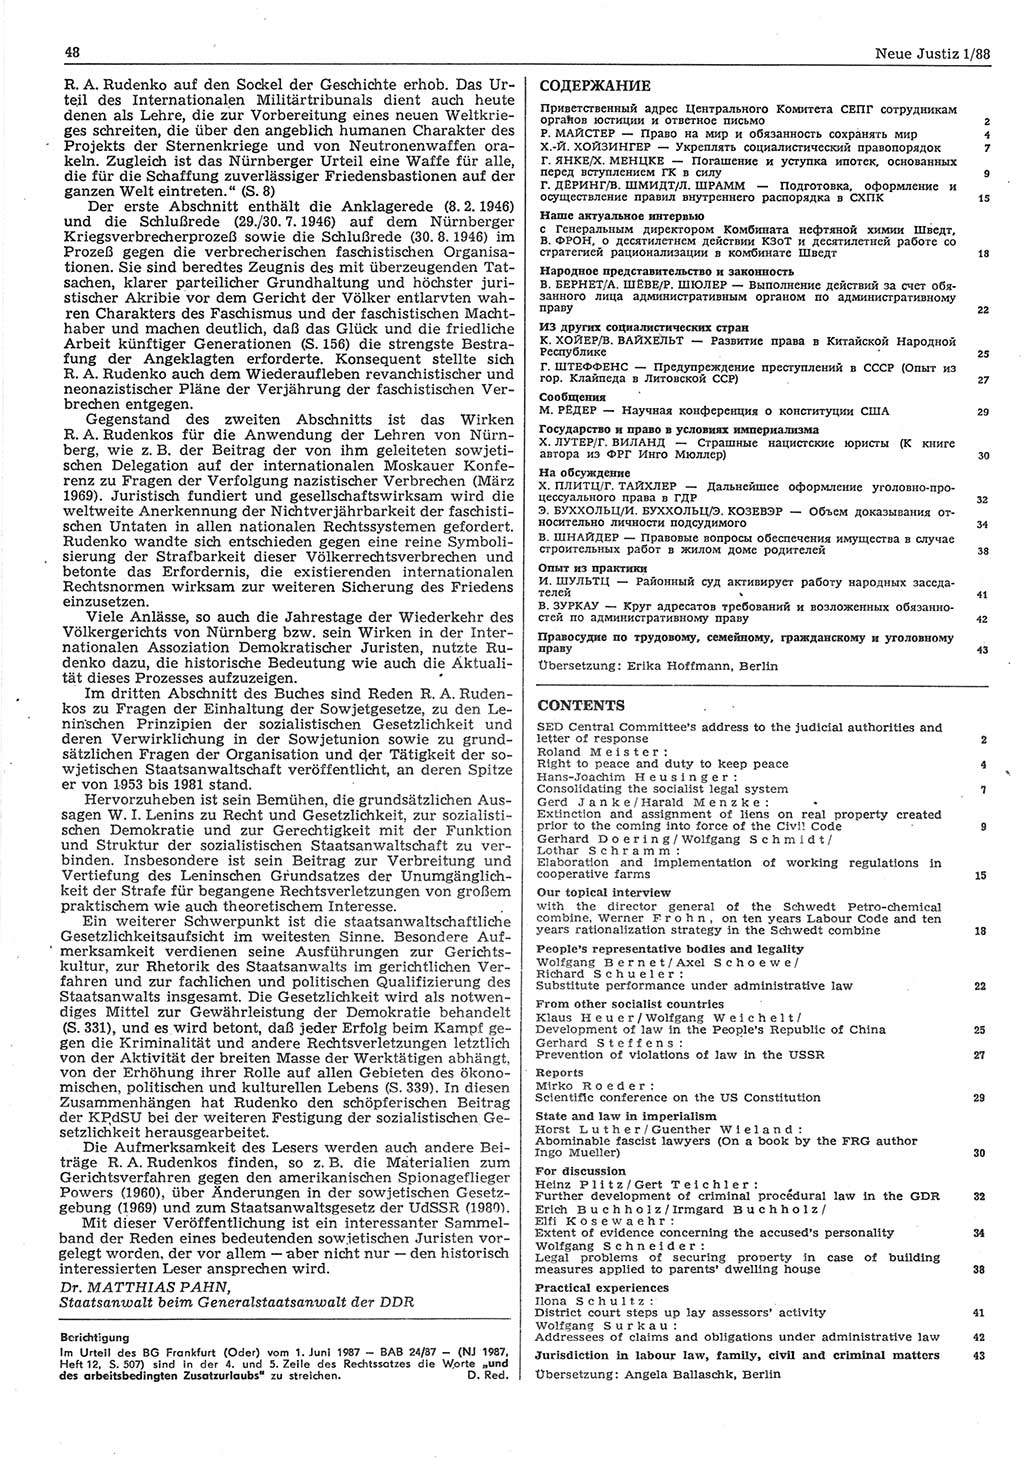 Neue Justiz (NJ), Zeitschrift für sozialistisches Recht und Gesetzlichkeit [Deutsche Demokratische Republik (DDR)], 42. Jahrgang 1988, Seite 48 (NJ DDR 1988, S. 48)